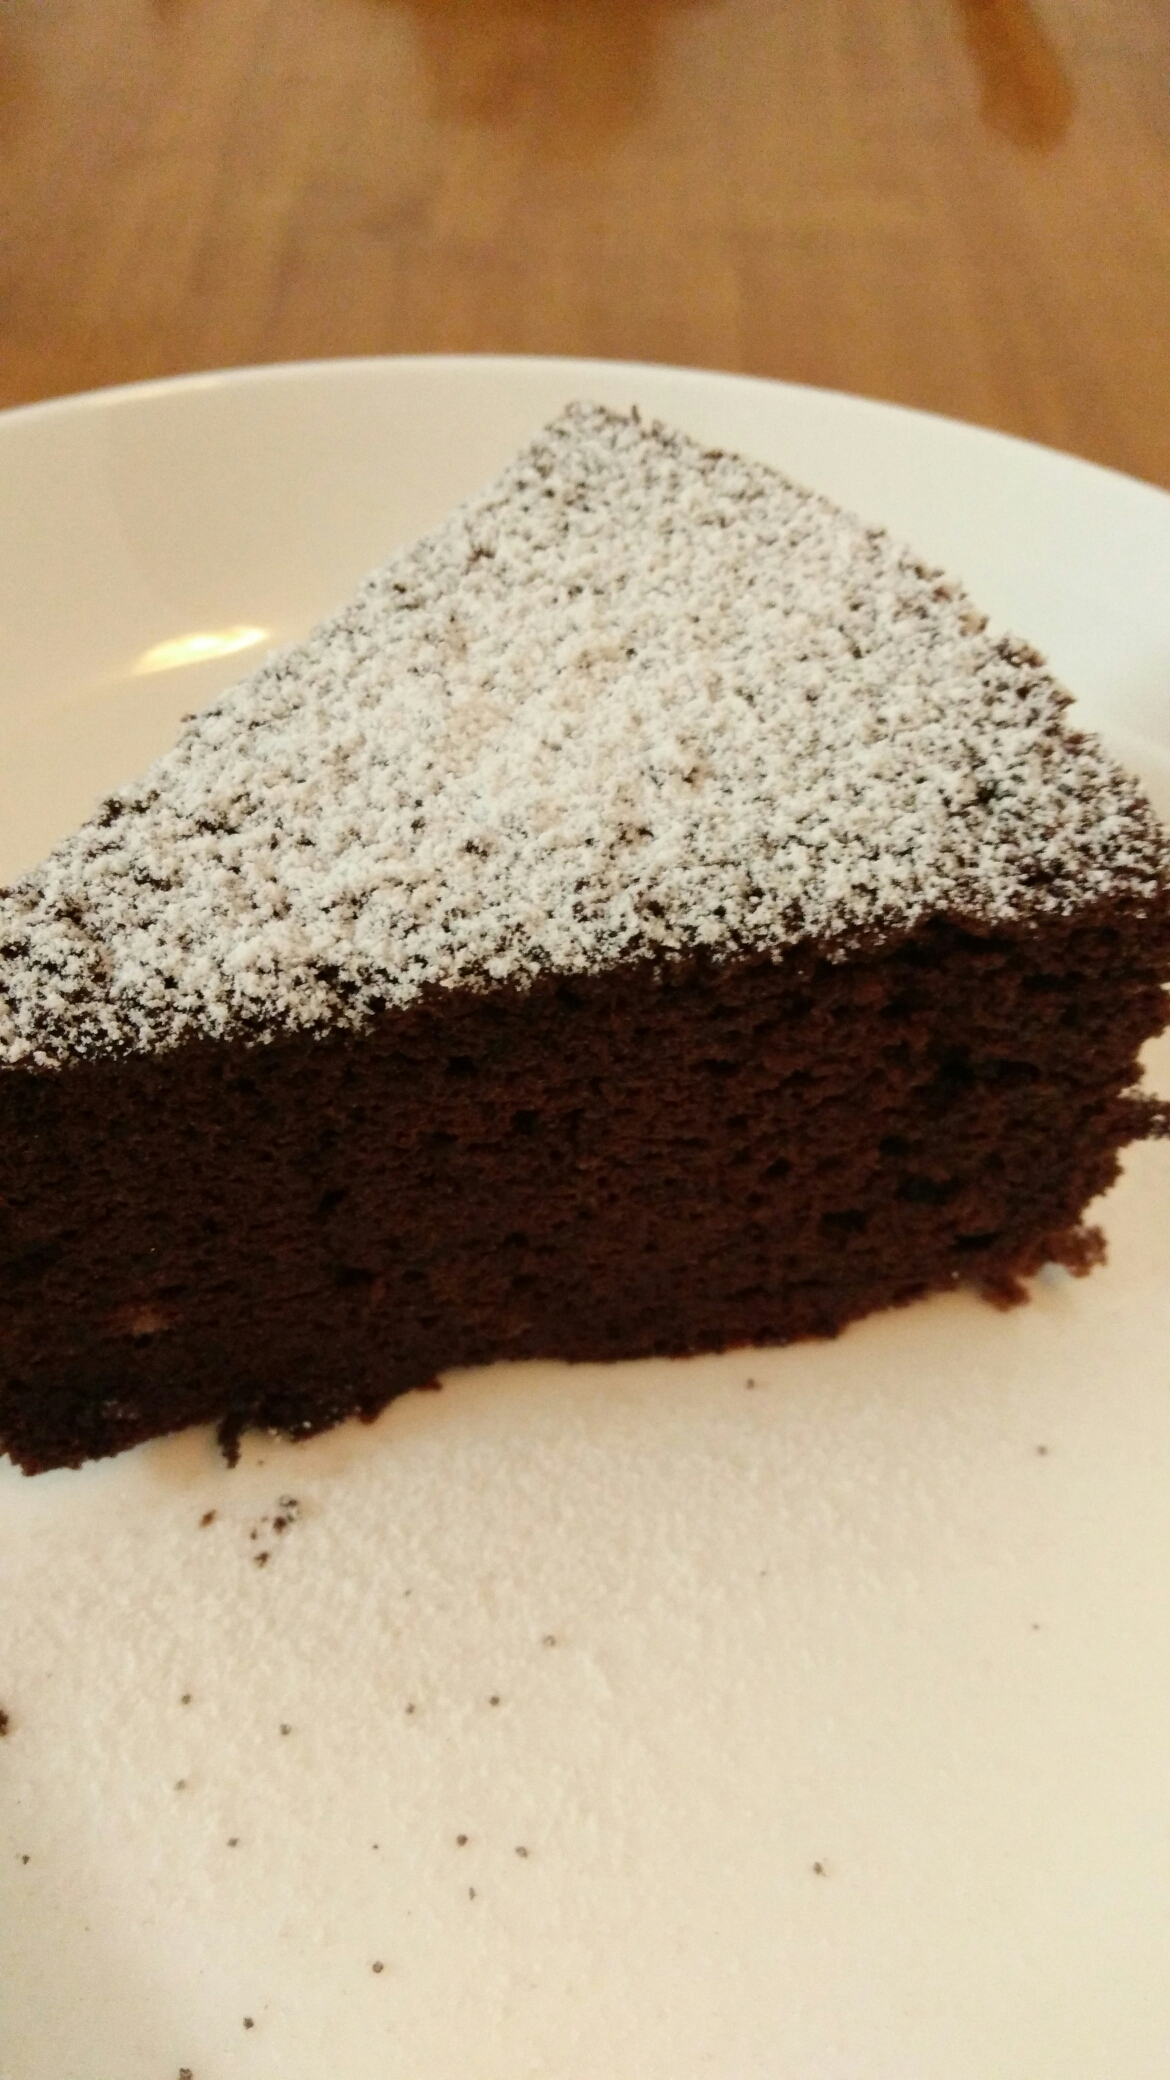 浓情巧克力蛋糕的做法